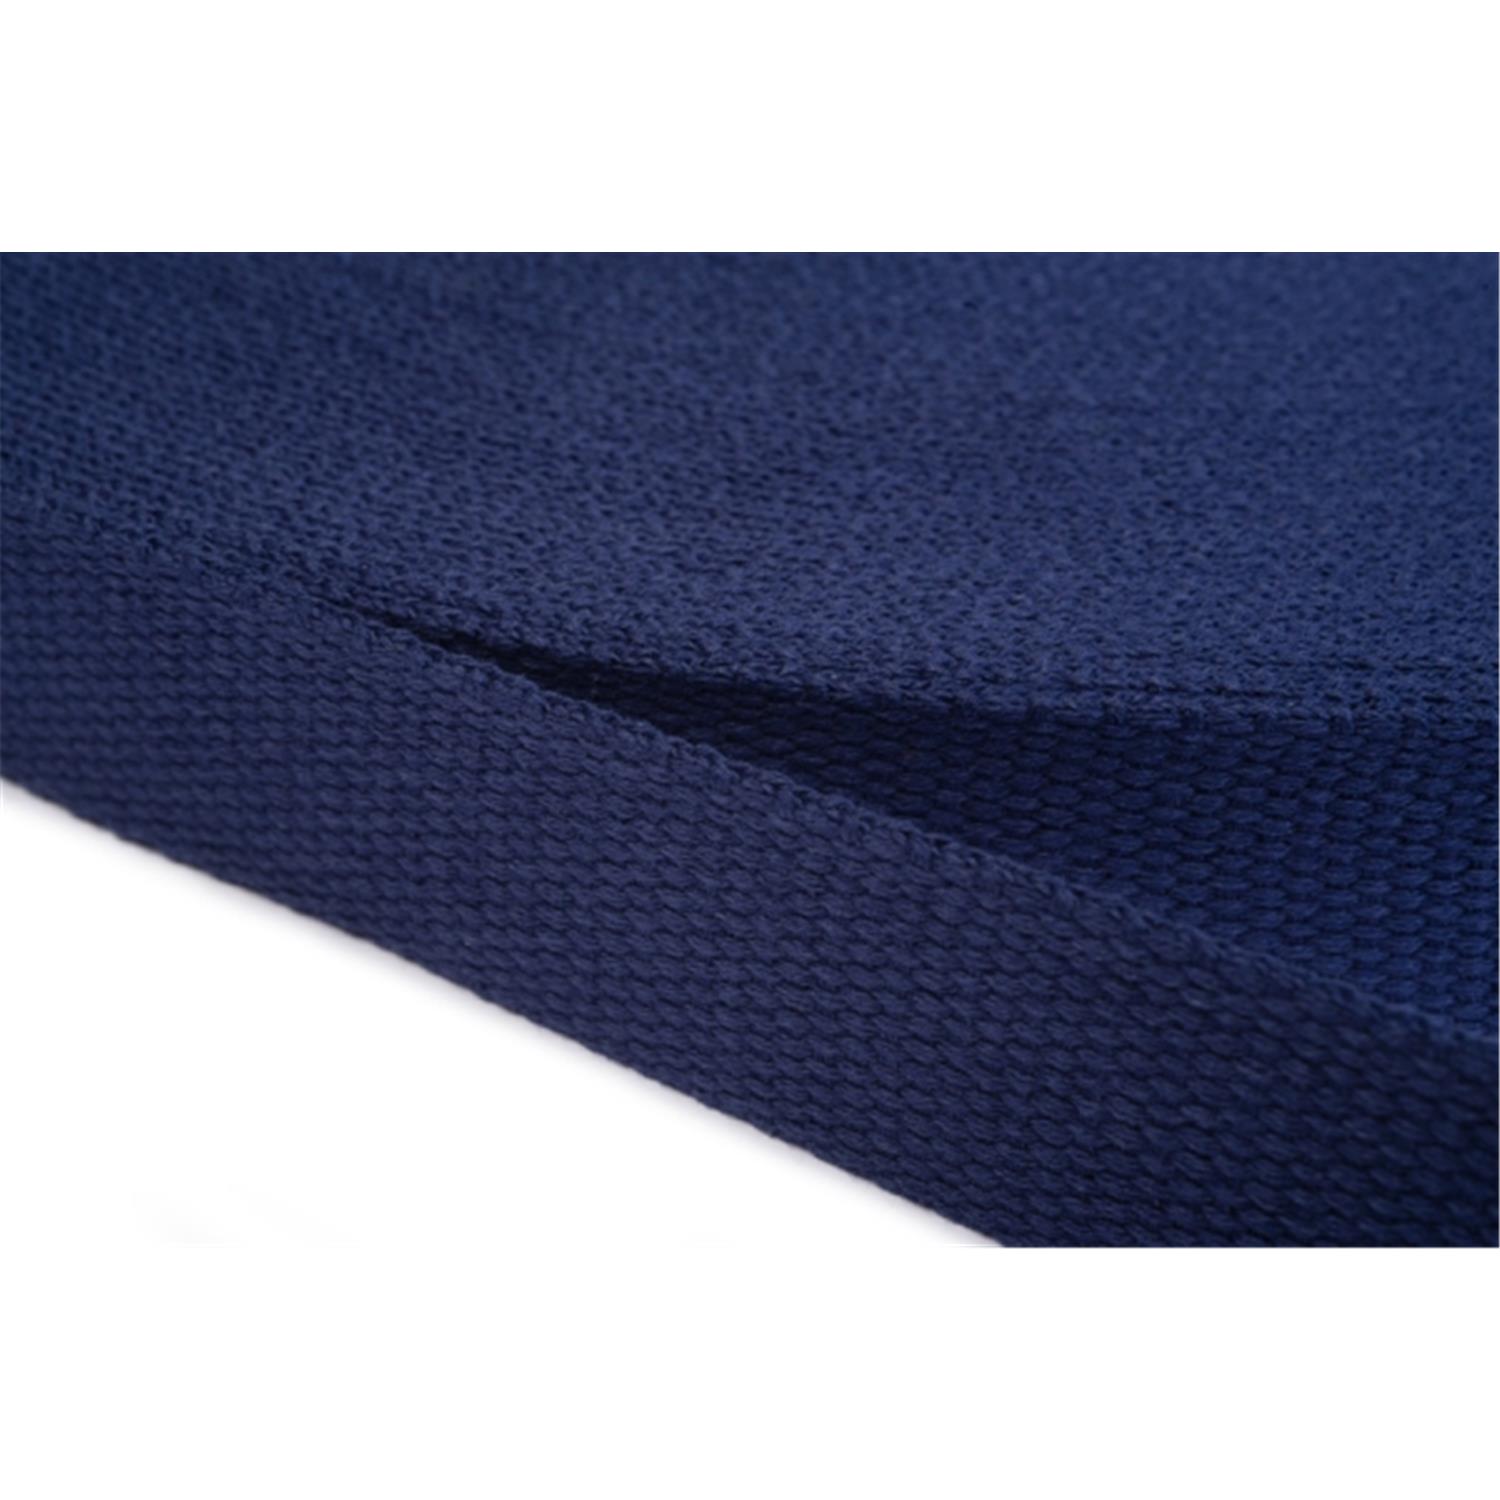 Gurtband aus Baumwolle 25mm in 20 Farben 13 - dunkelblau 6 Meter